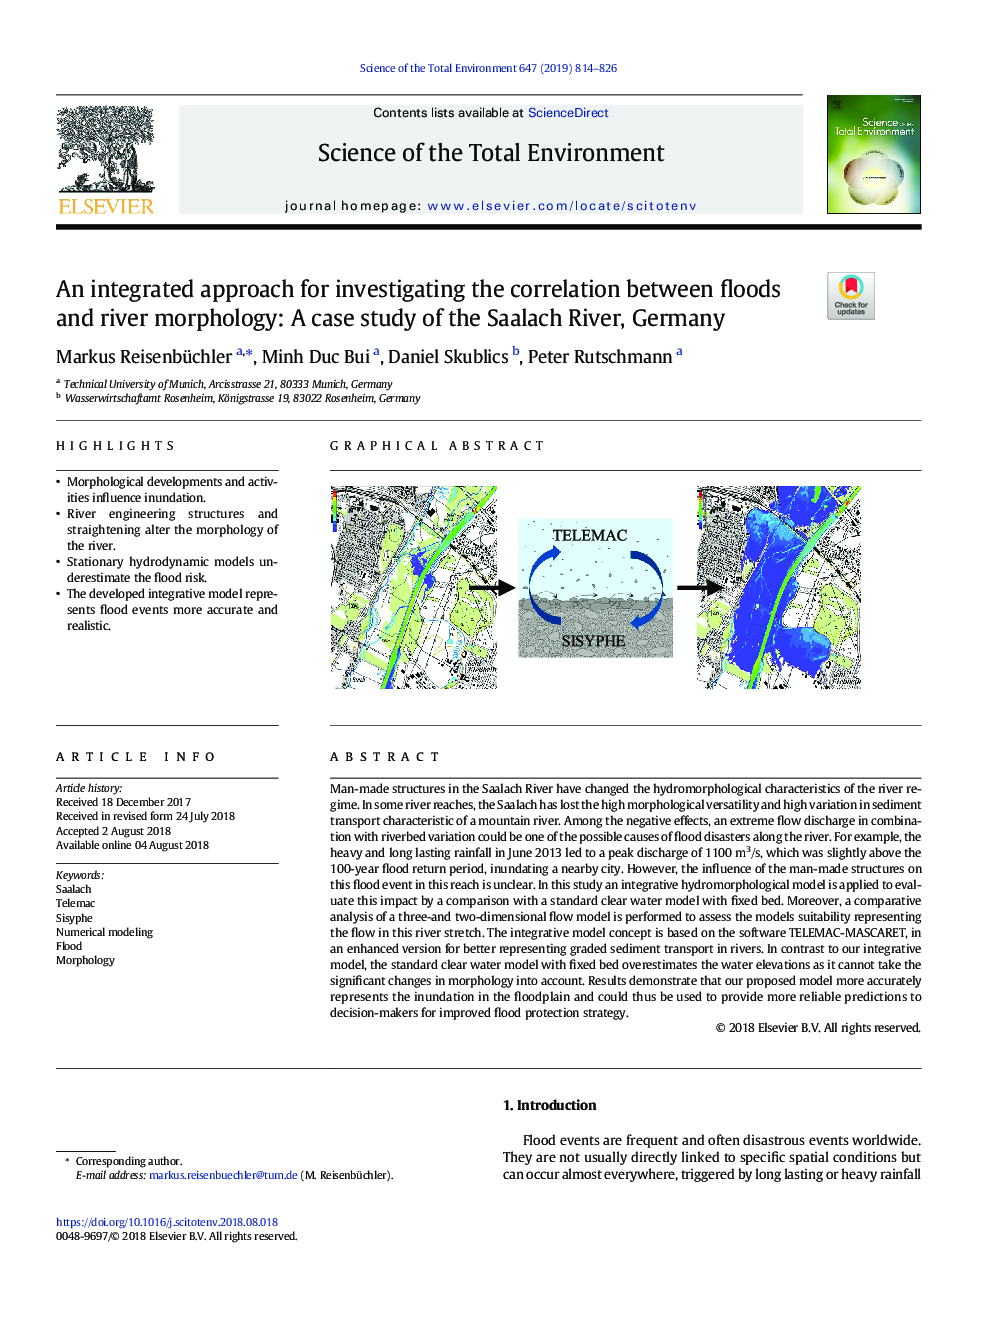 یک رویکرد یکپارچه برای بررسی ارتباط بین سیل و مورفولوژی رودخانه: مطالعه موردی رودخانه ساالچ، آلمان